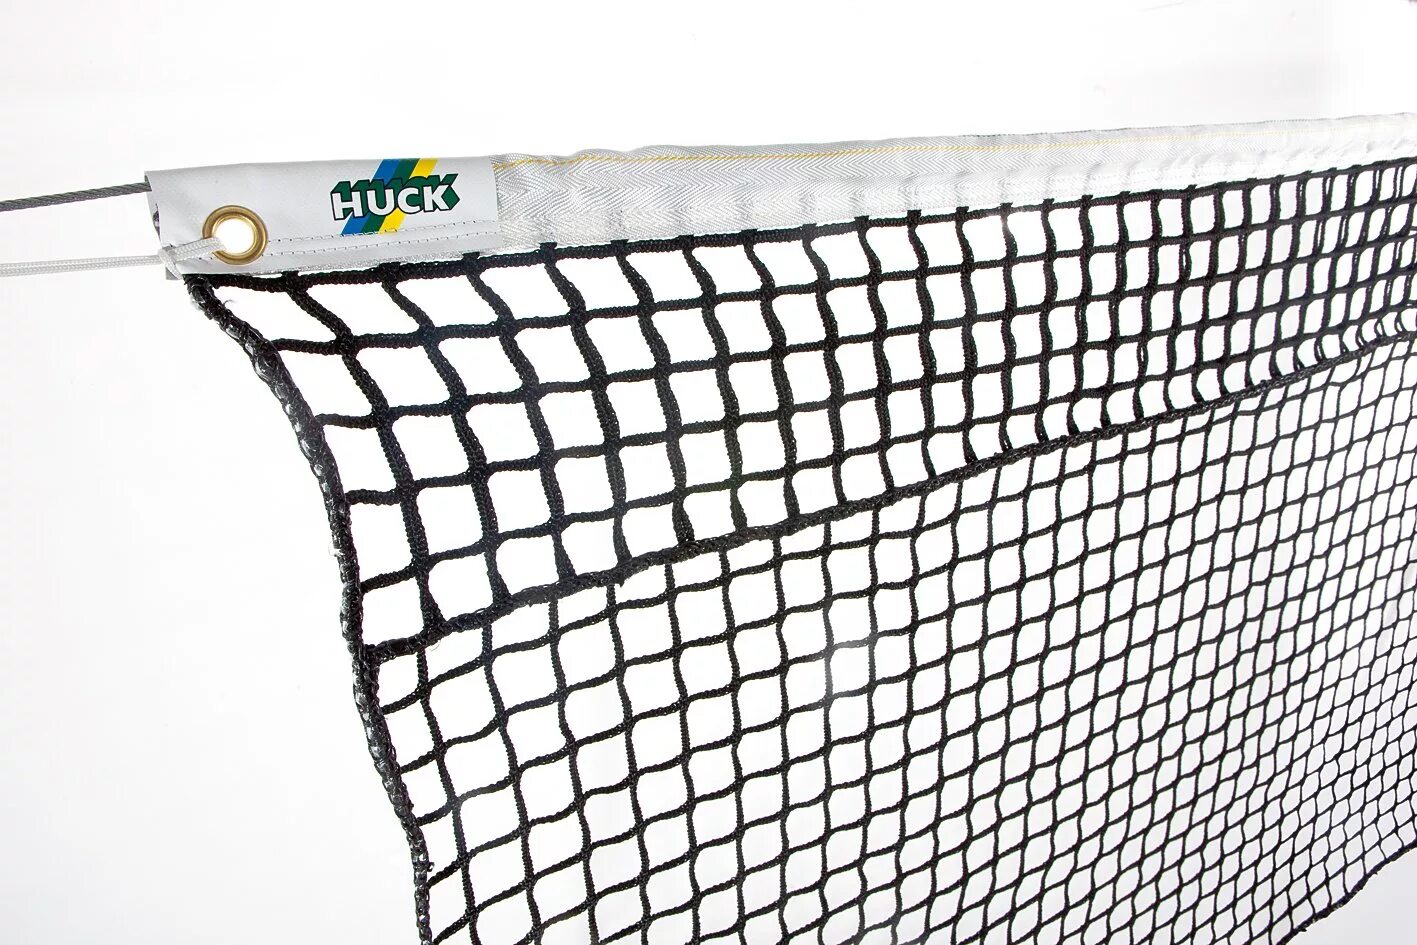 Сетка теннисная TN-20 Universal Huck. Сетка Huck 2нити. Сетка для тенниса ARTENGO 5 метров. Сетка для тенниса 1,5м. Т9638.